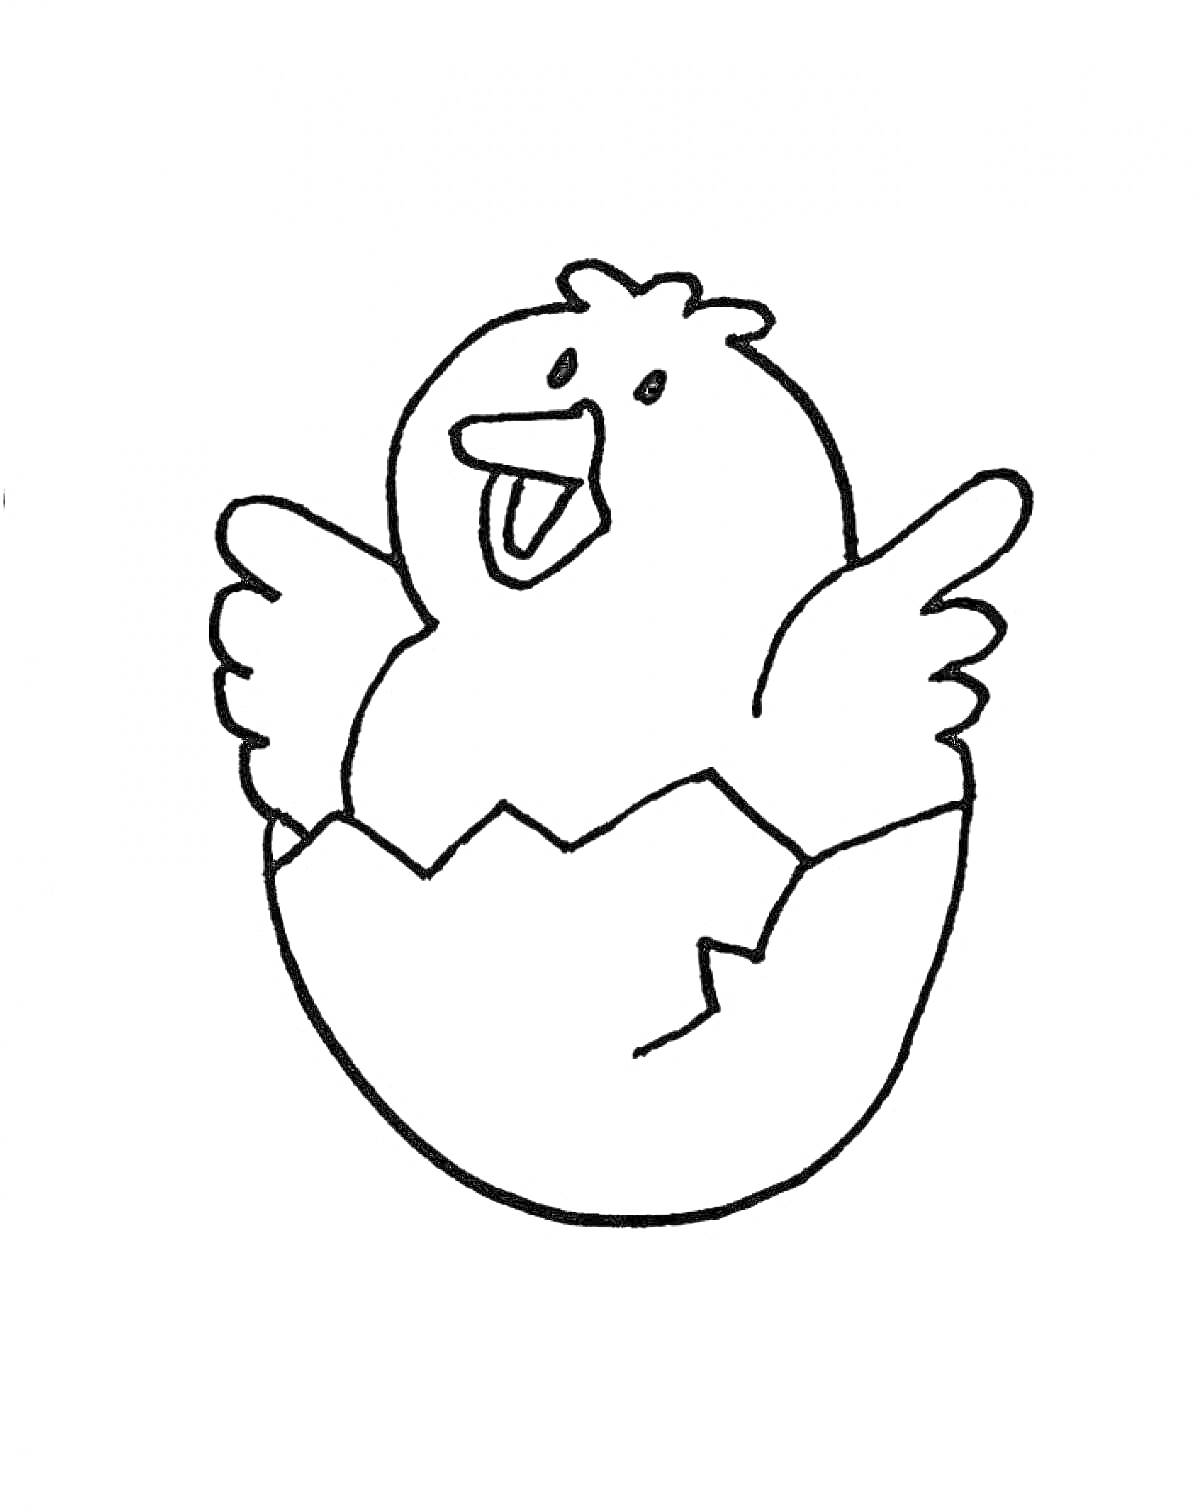 Раскраска Цыпленок в скорлупе с поднятыми крыльями